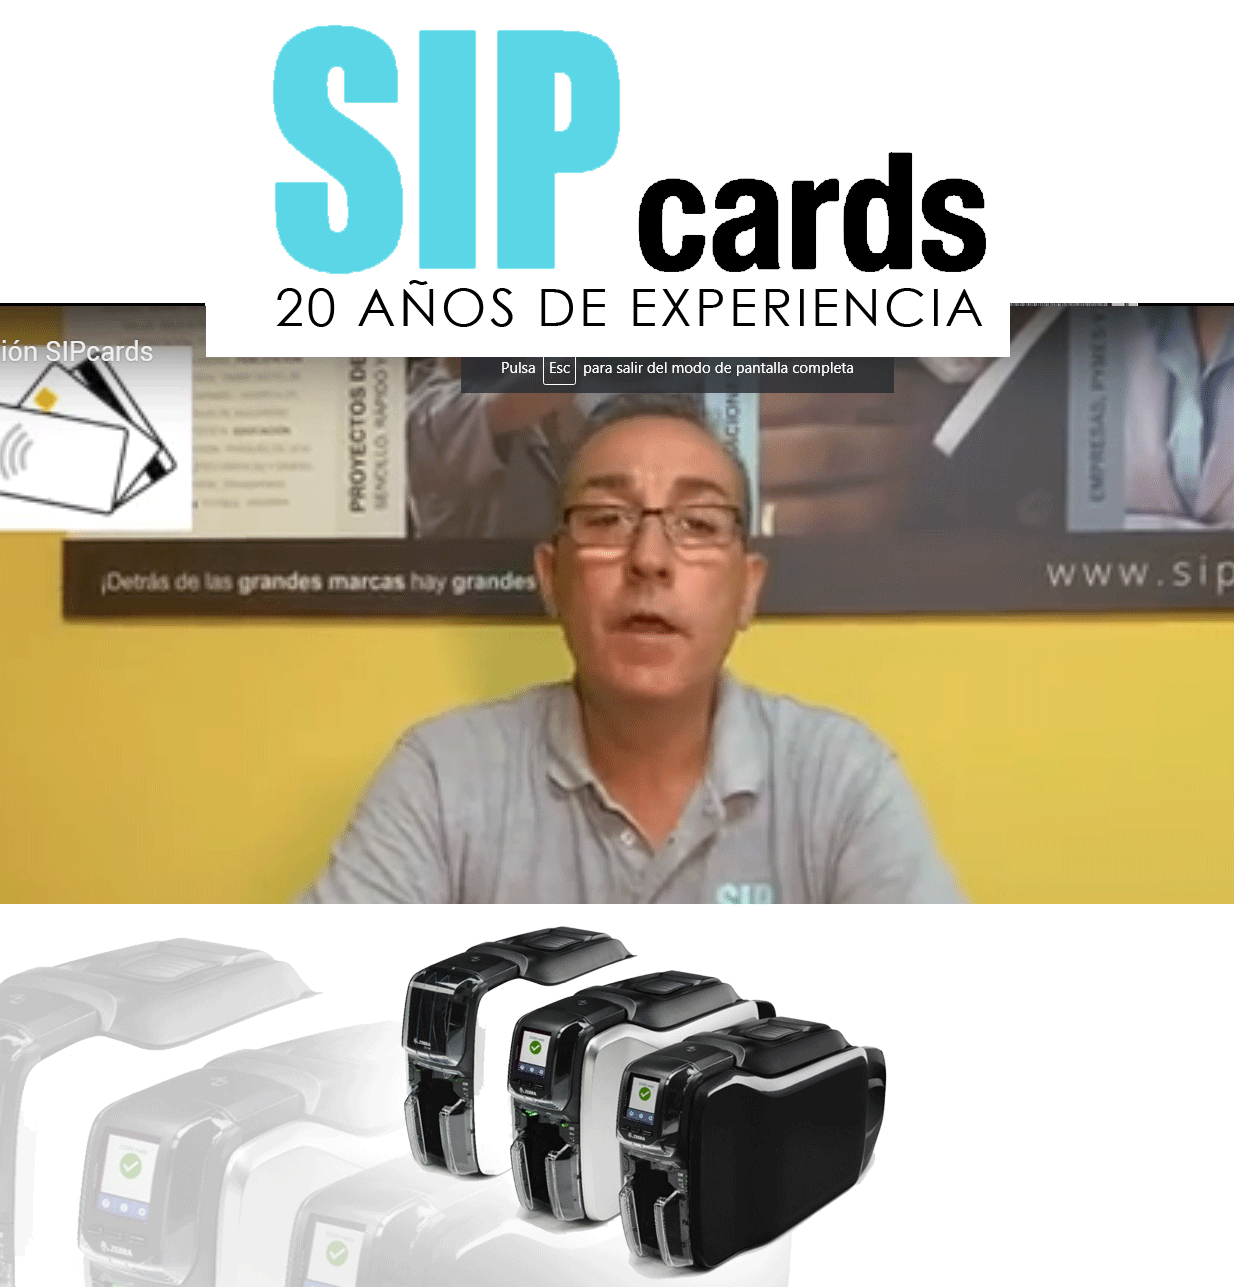 Untitled 3 - OLD_Servicio de Mantenimiento de Impresoras de Tarjetas PVC